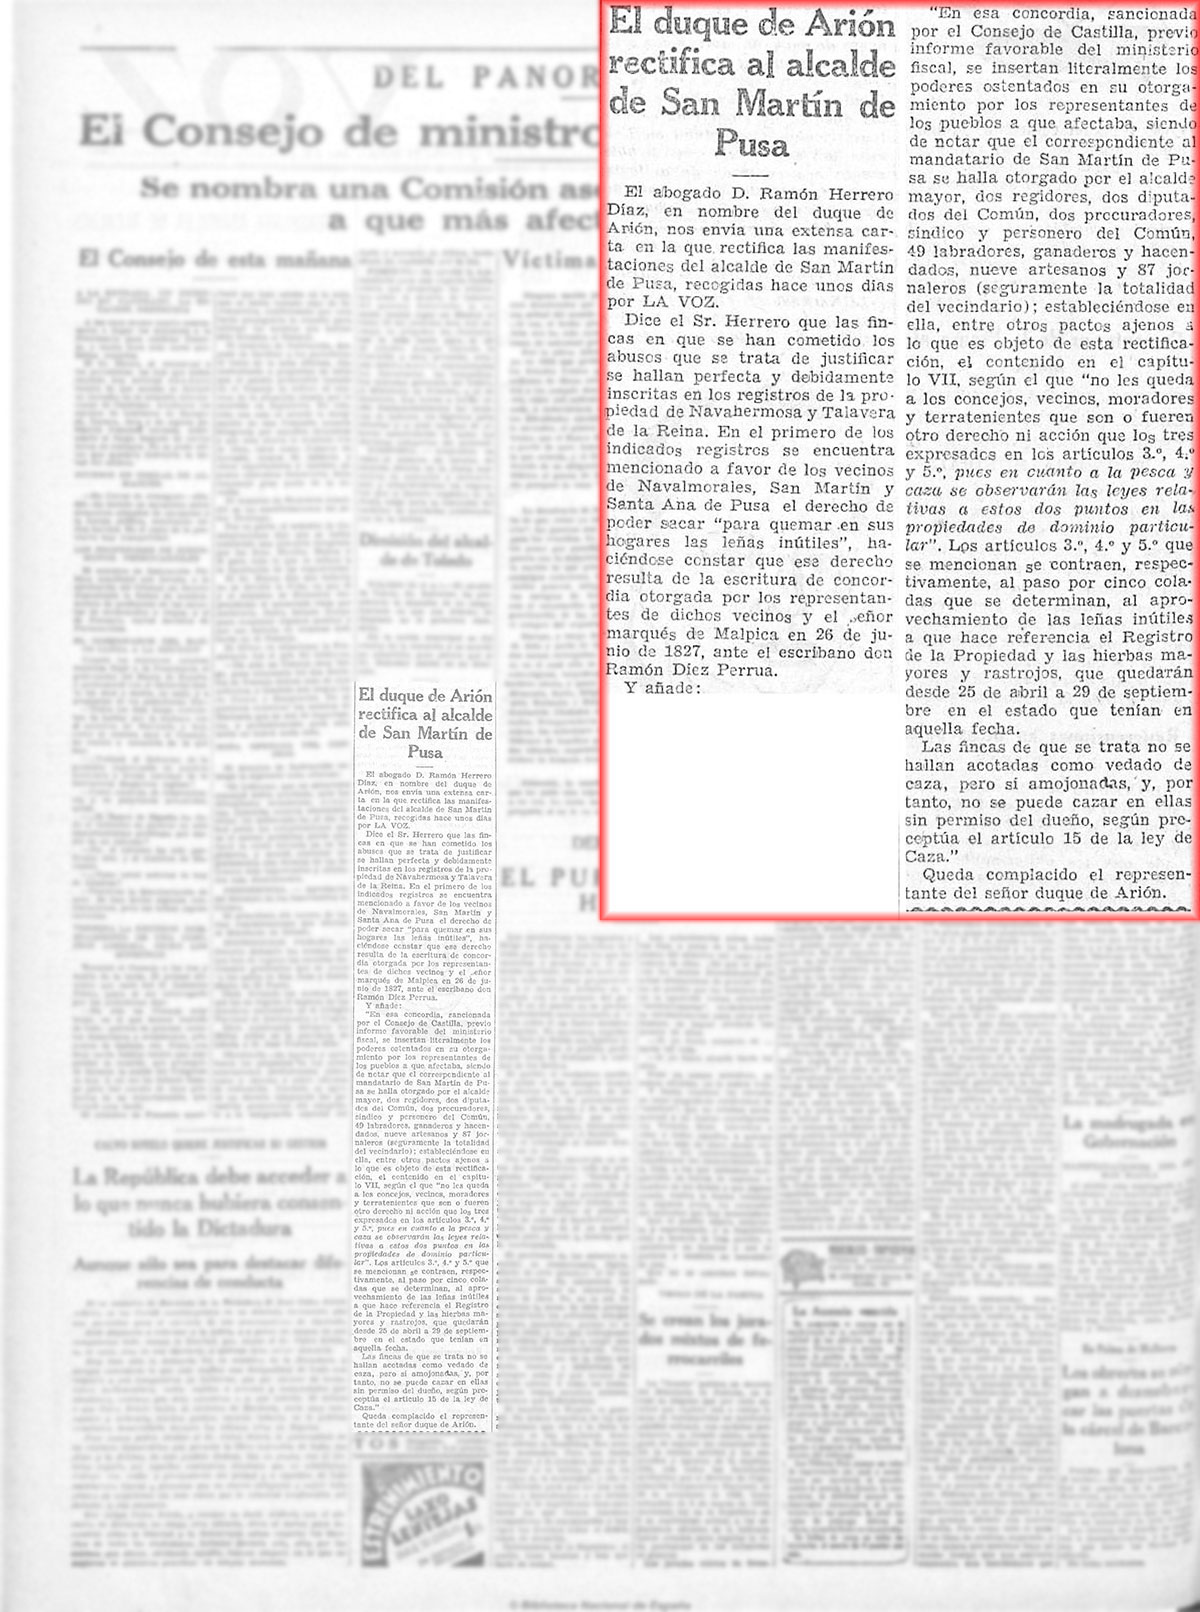 El duque de Arión rectifica al alcalde de San Martín de Pusa. La Voz, 22/9/1931